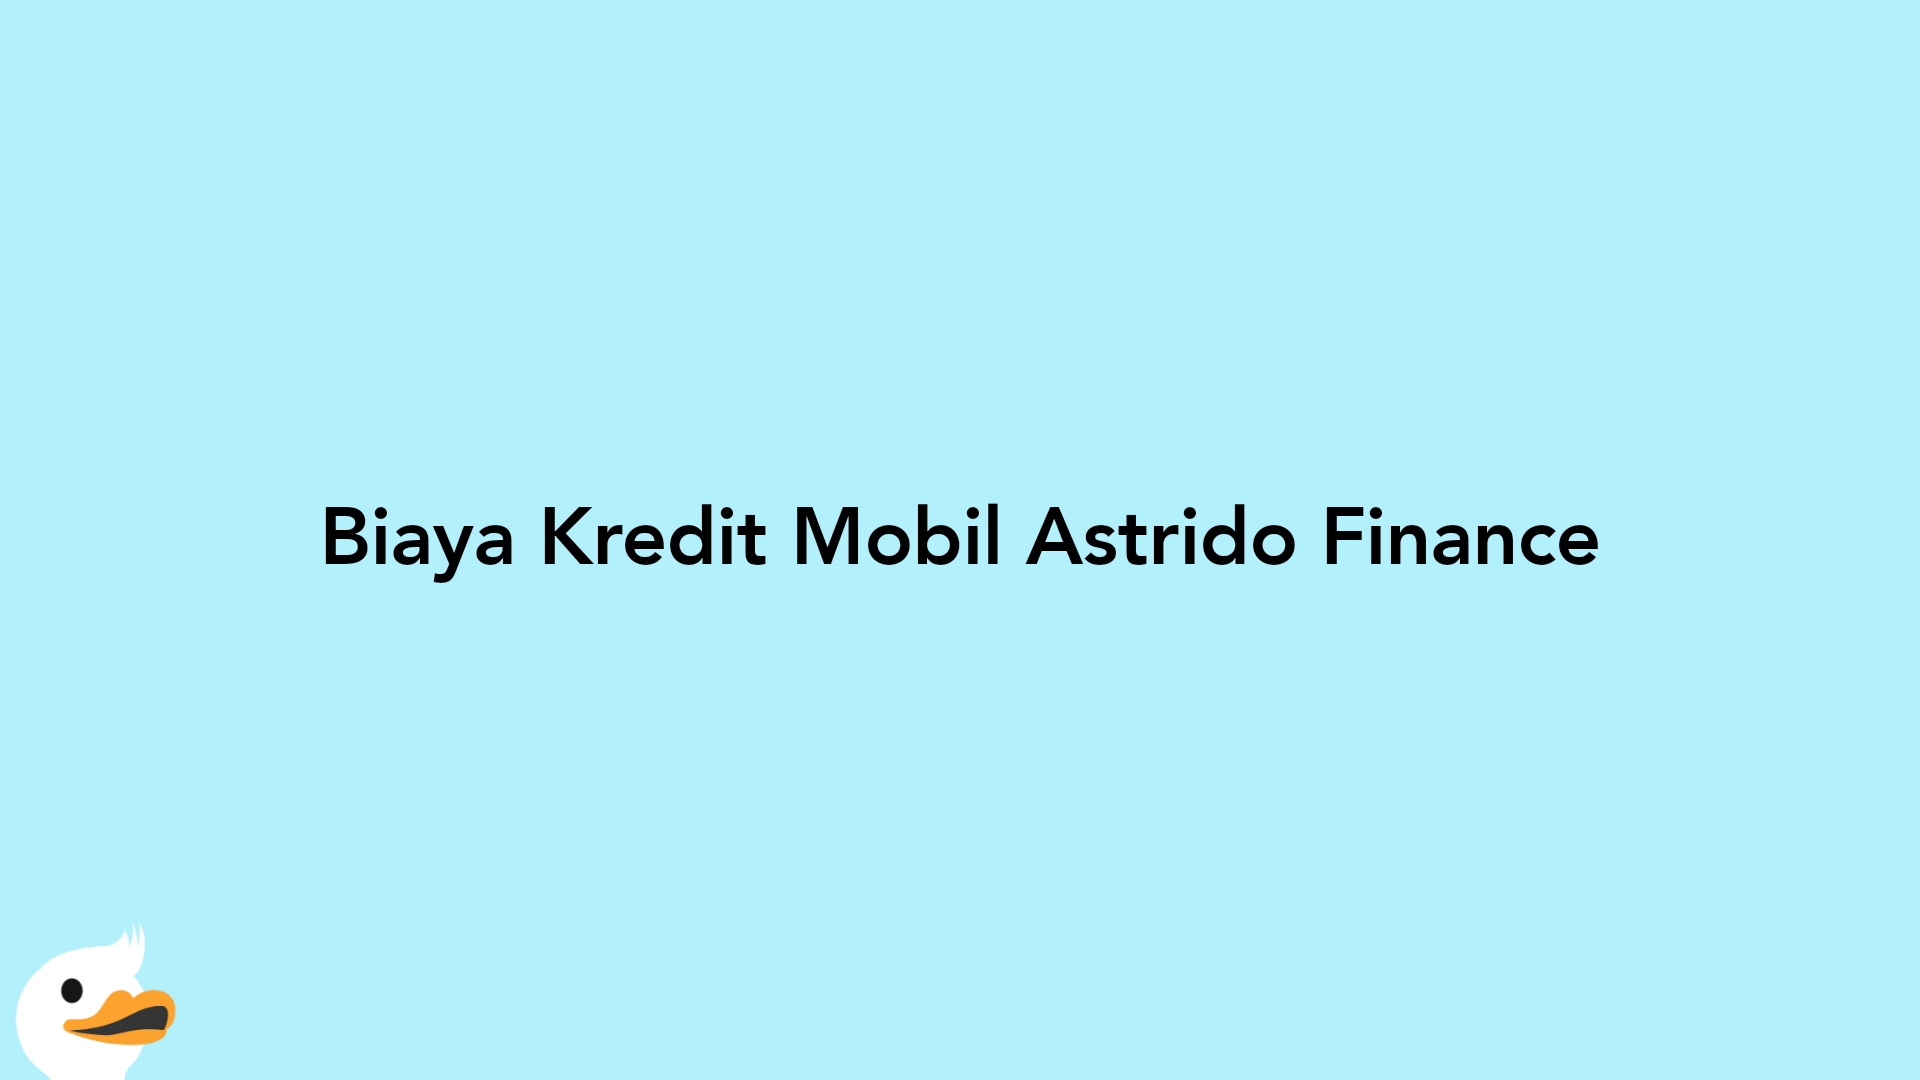 Biaya Kredit Mobil Astrido Finance